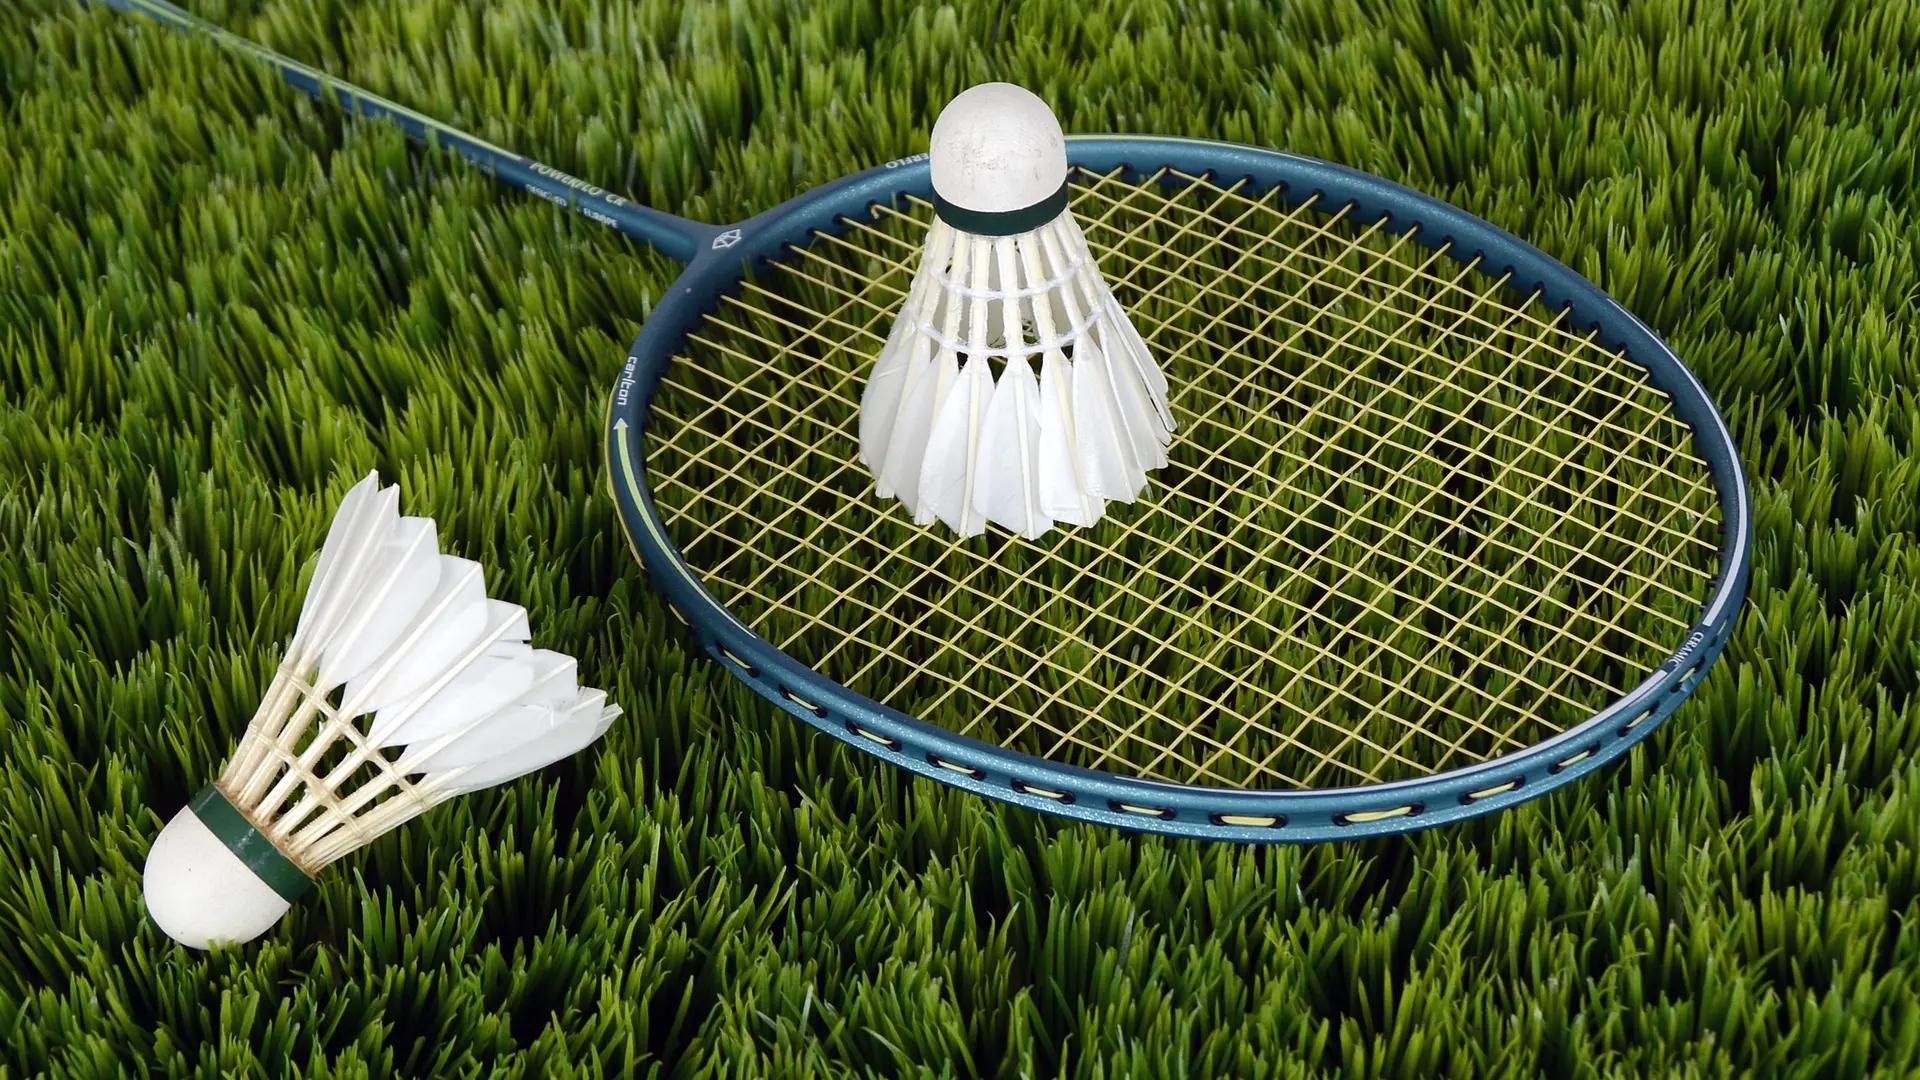 deporte parecido al tenis que se juega con un volante - Qué tipo de deporte es el pickleball